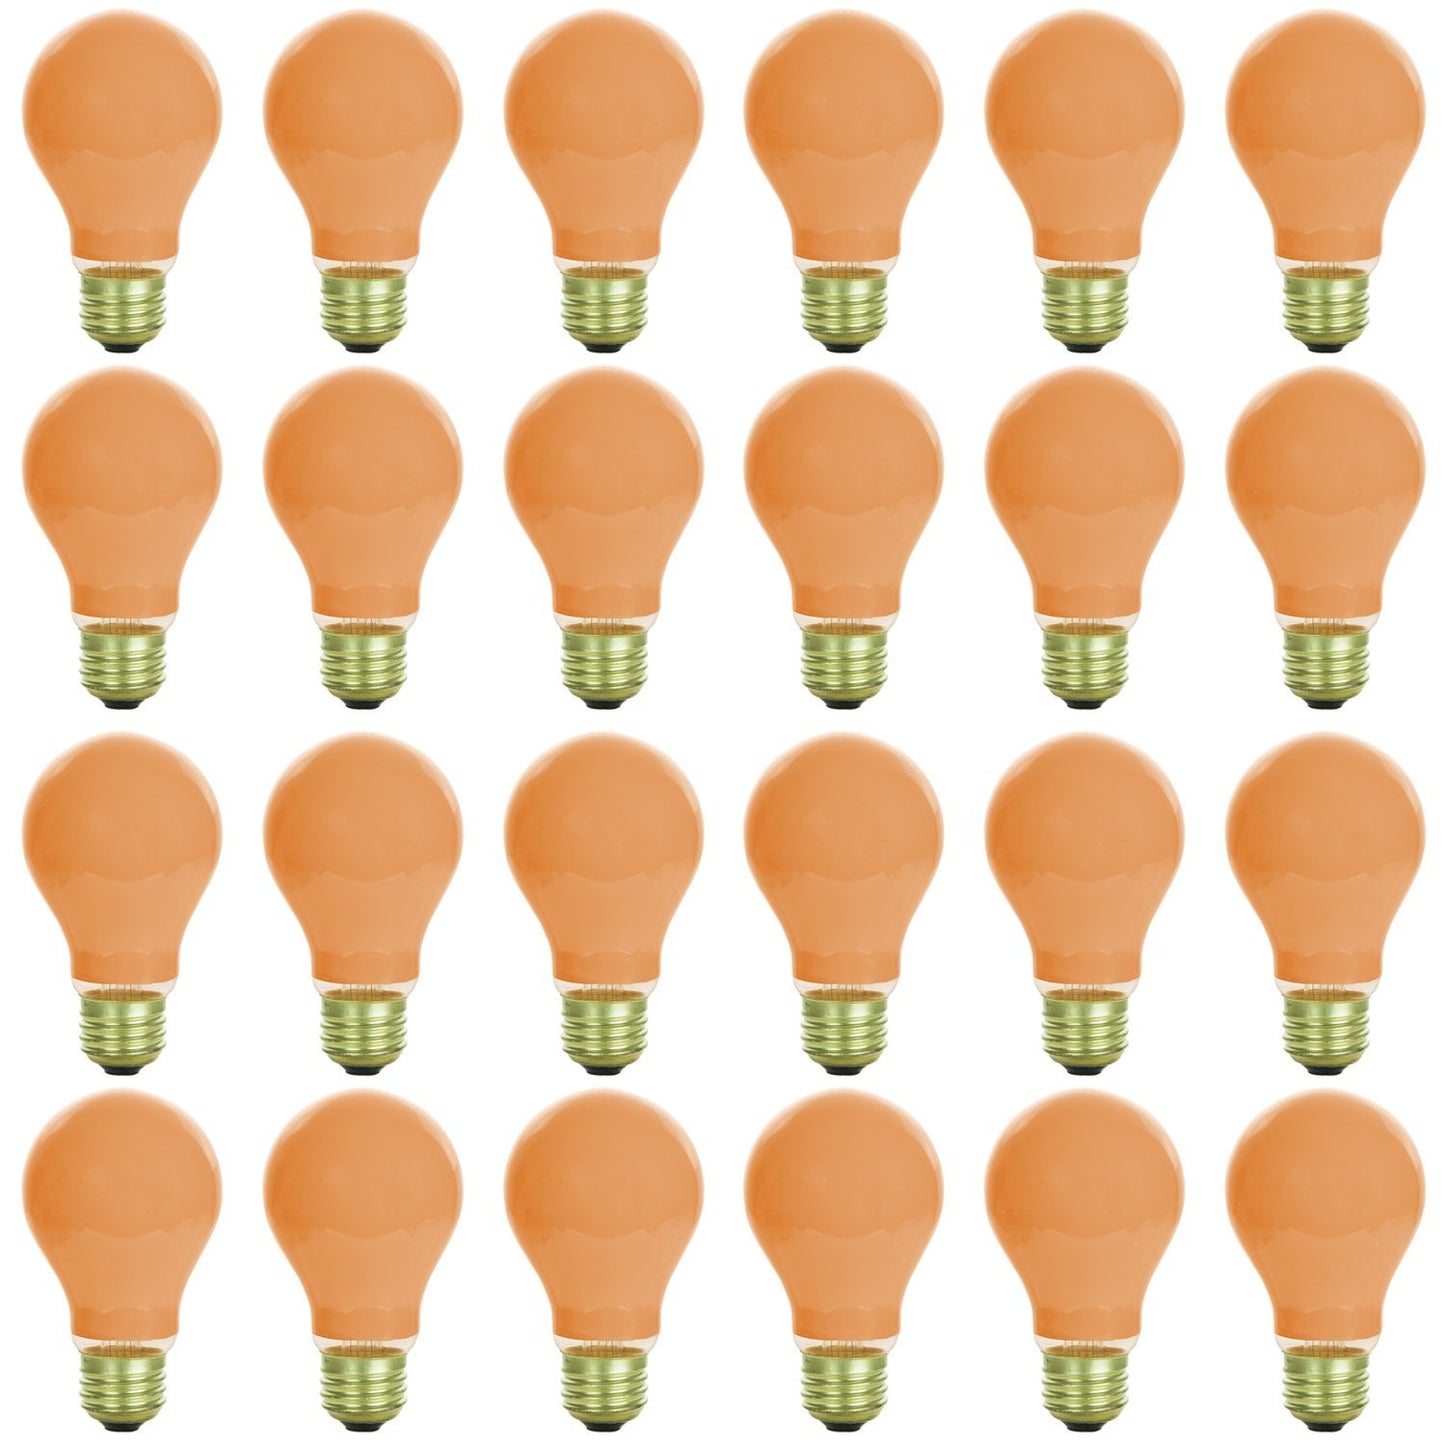 Sunlite 40 Watt A19 Colored, Medium Base, Ceramic Orange